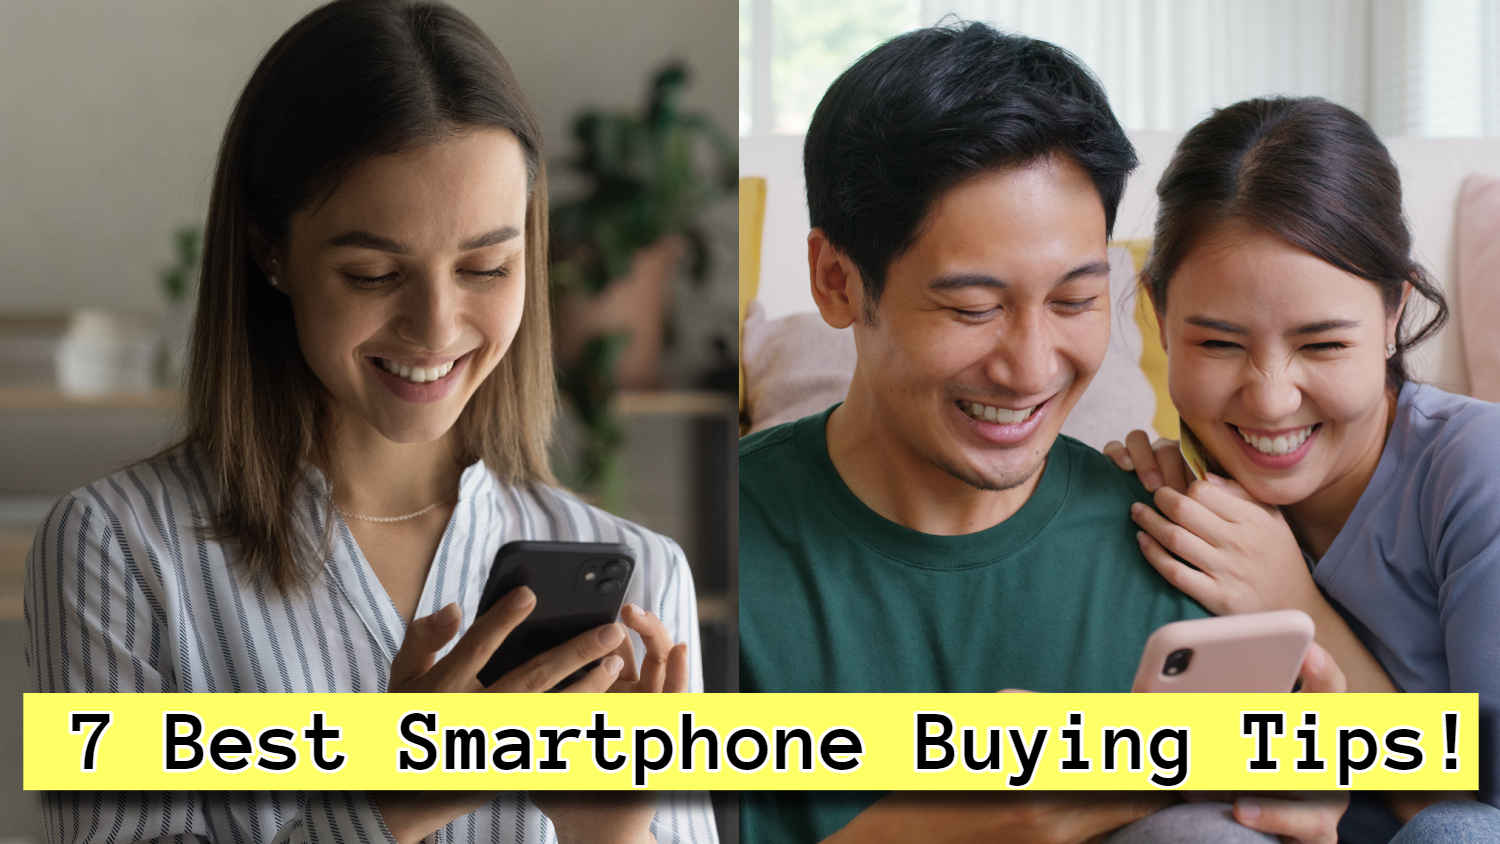 अपनी जेब का ख्याल रखते हुए कैसे खरीदें एक बेस्ट वैल्यू फॉर मनी स्मार्टफोन, देखें सम्पूर्ण जानकारी